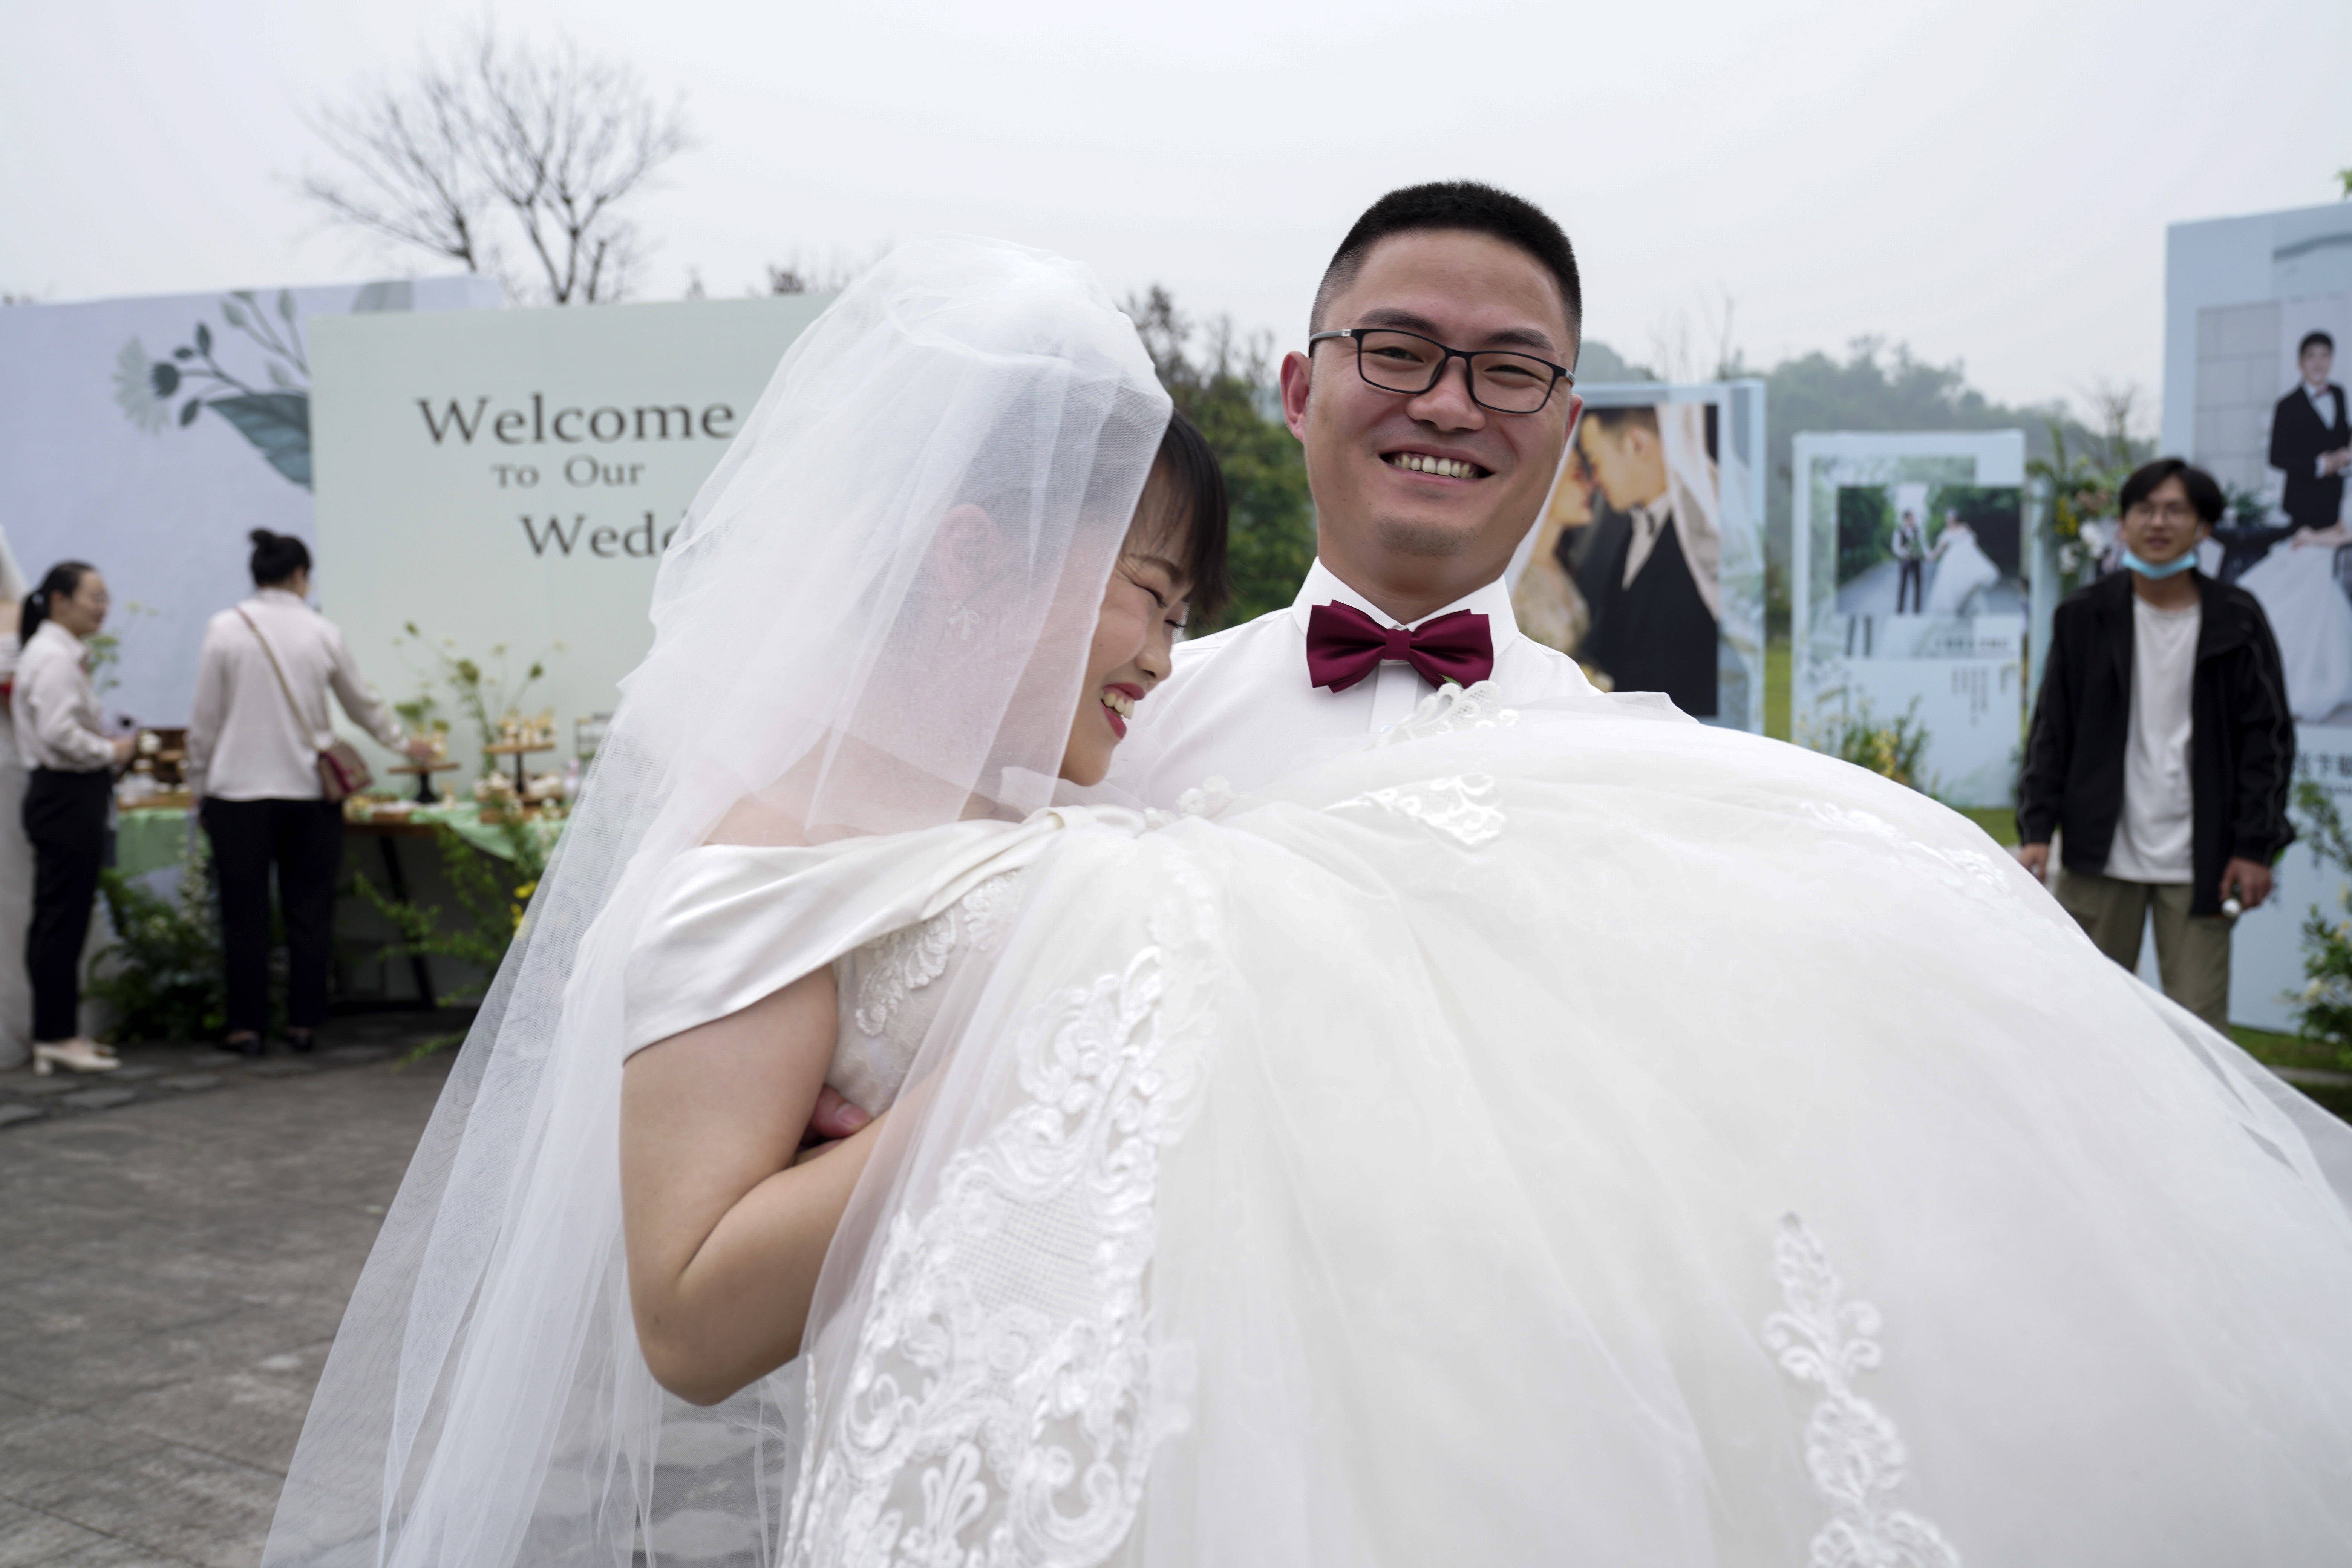 日,在重庆市北碚区中铁二十二局五公司集体婚礼现场,一名新郎抱起新娘